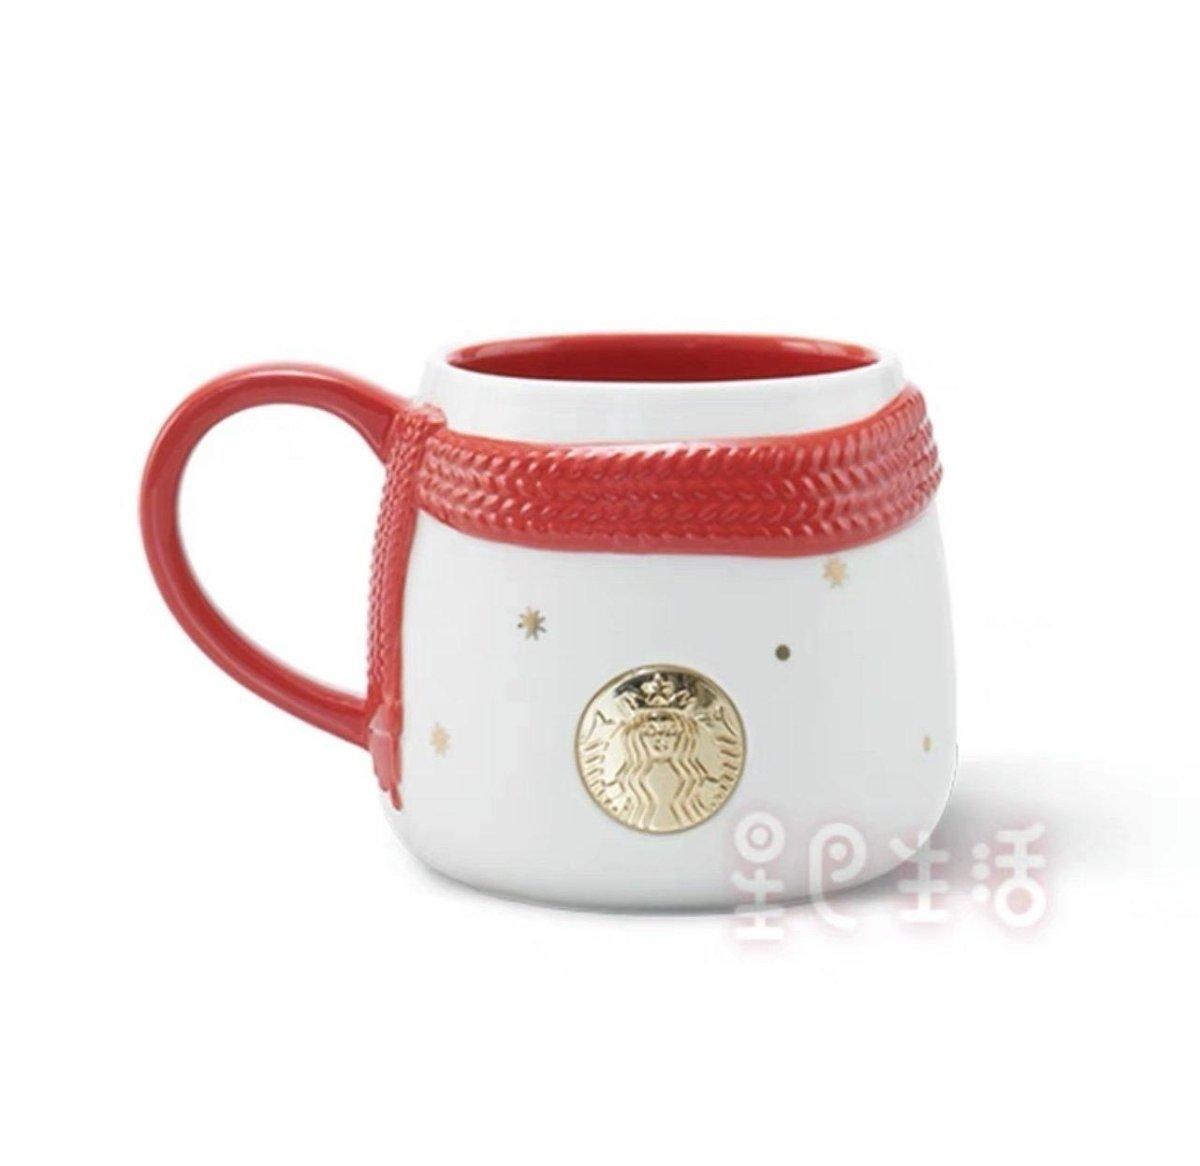 Starbucks Red Scarf Embossed White Ceramic Mug - Starbucks China Christmas 2021 - Ann Ann Starbucks